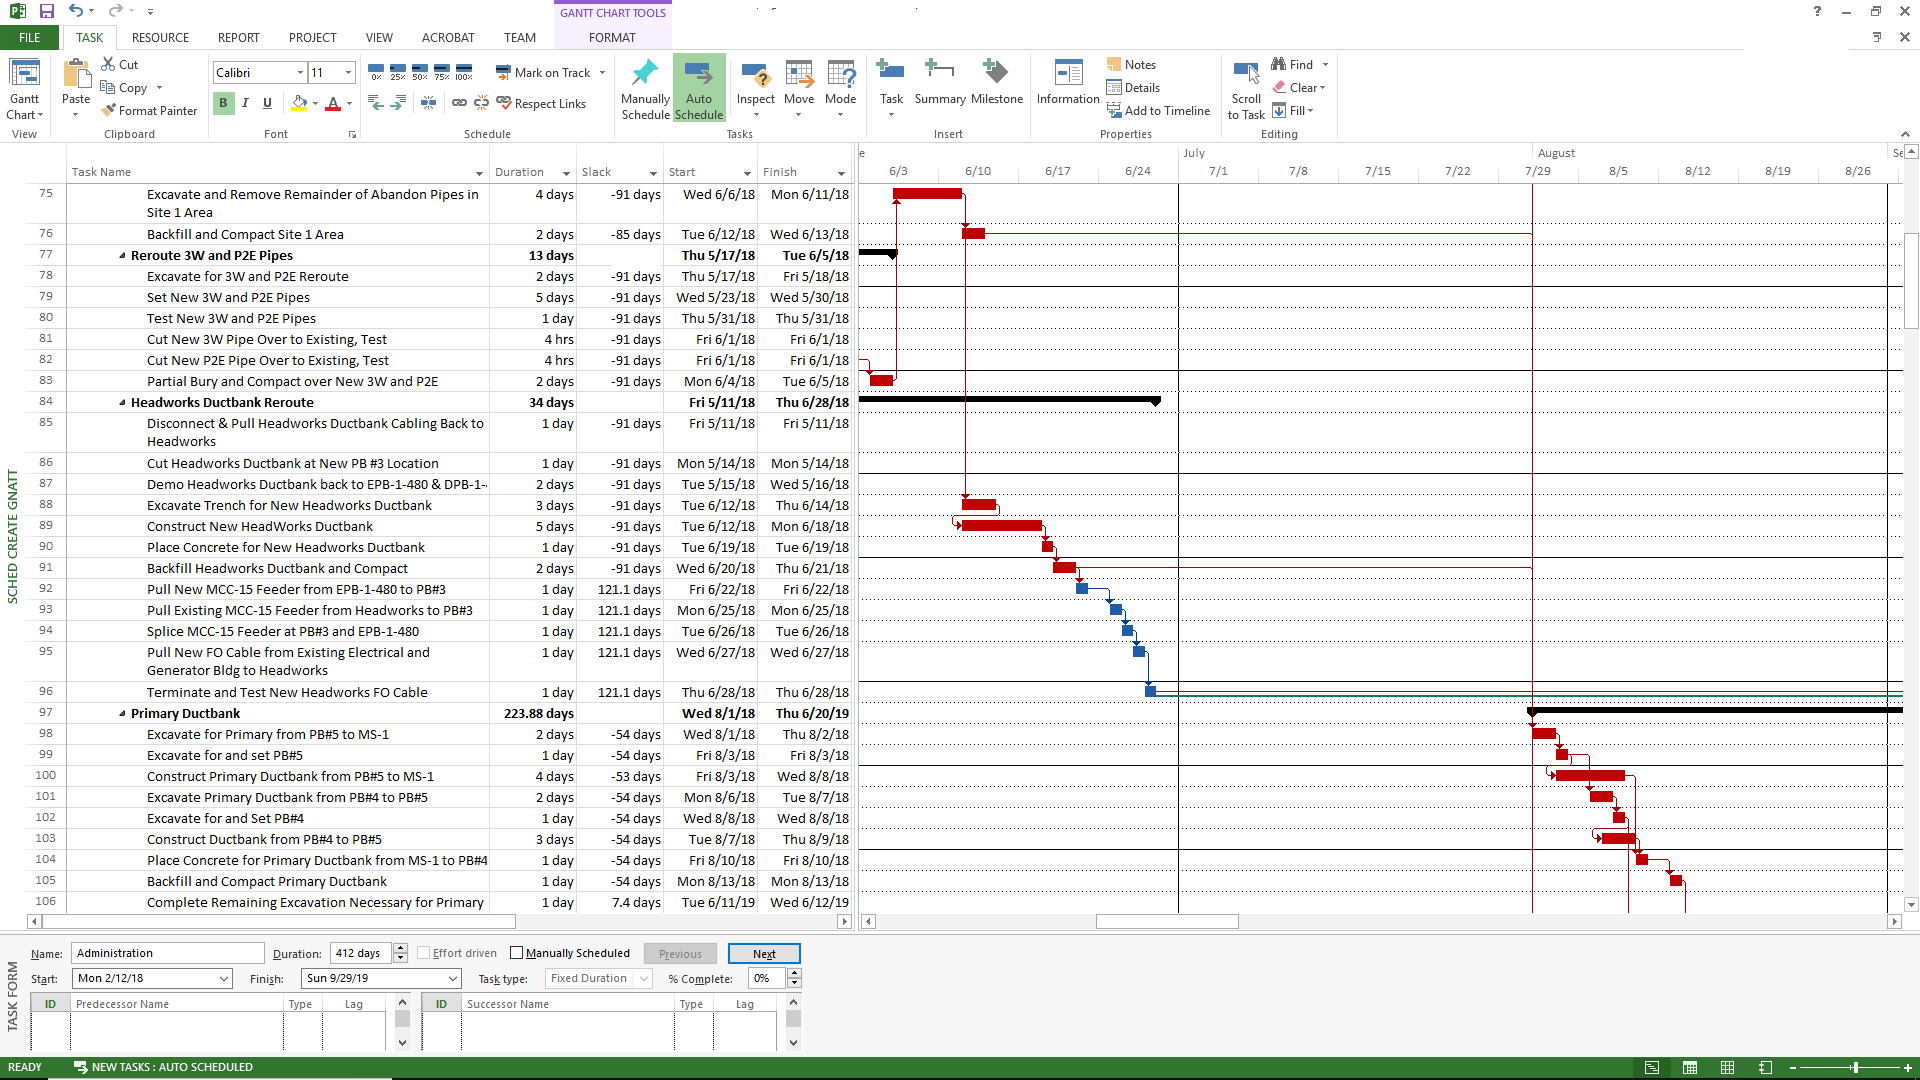 Negative Slack Calculation Error in MS Project 2013 - Microsoft Community